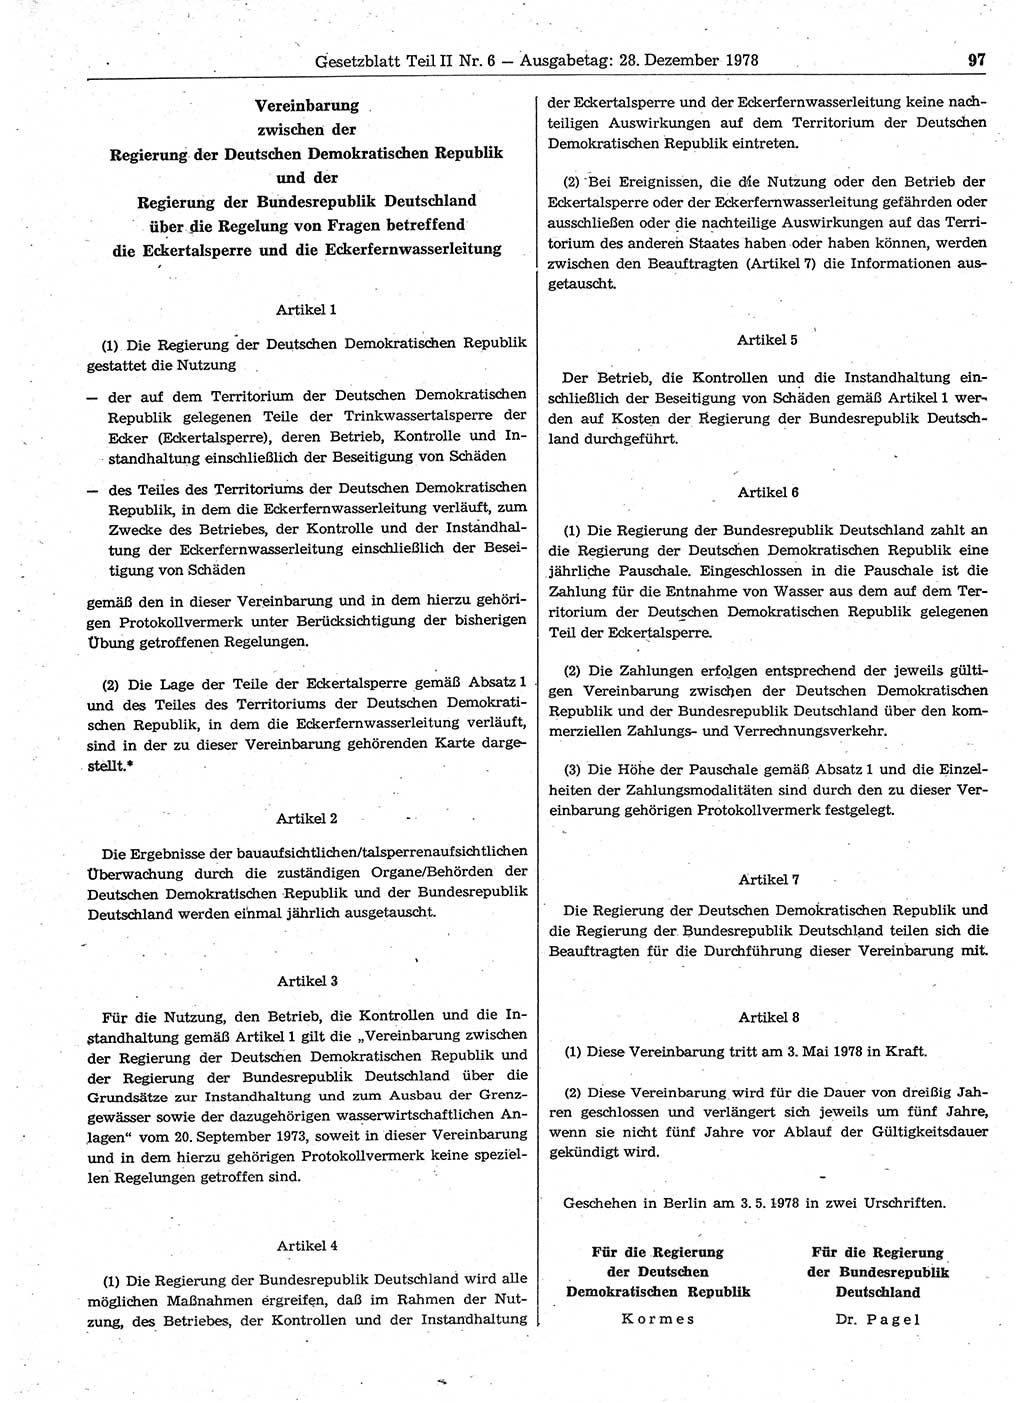 Gesetzblatt (GBl.) der Deutschen Demokratischen Republik (DDR) Teil ⅠⅠ 1978, Seite 97 (GBl. DDR ⅠⅠ 1978, S. 97)